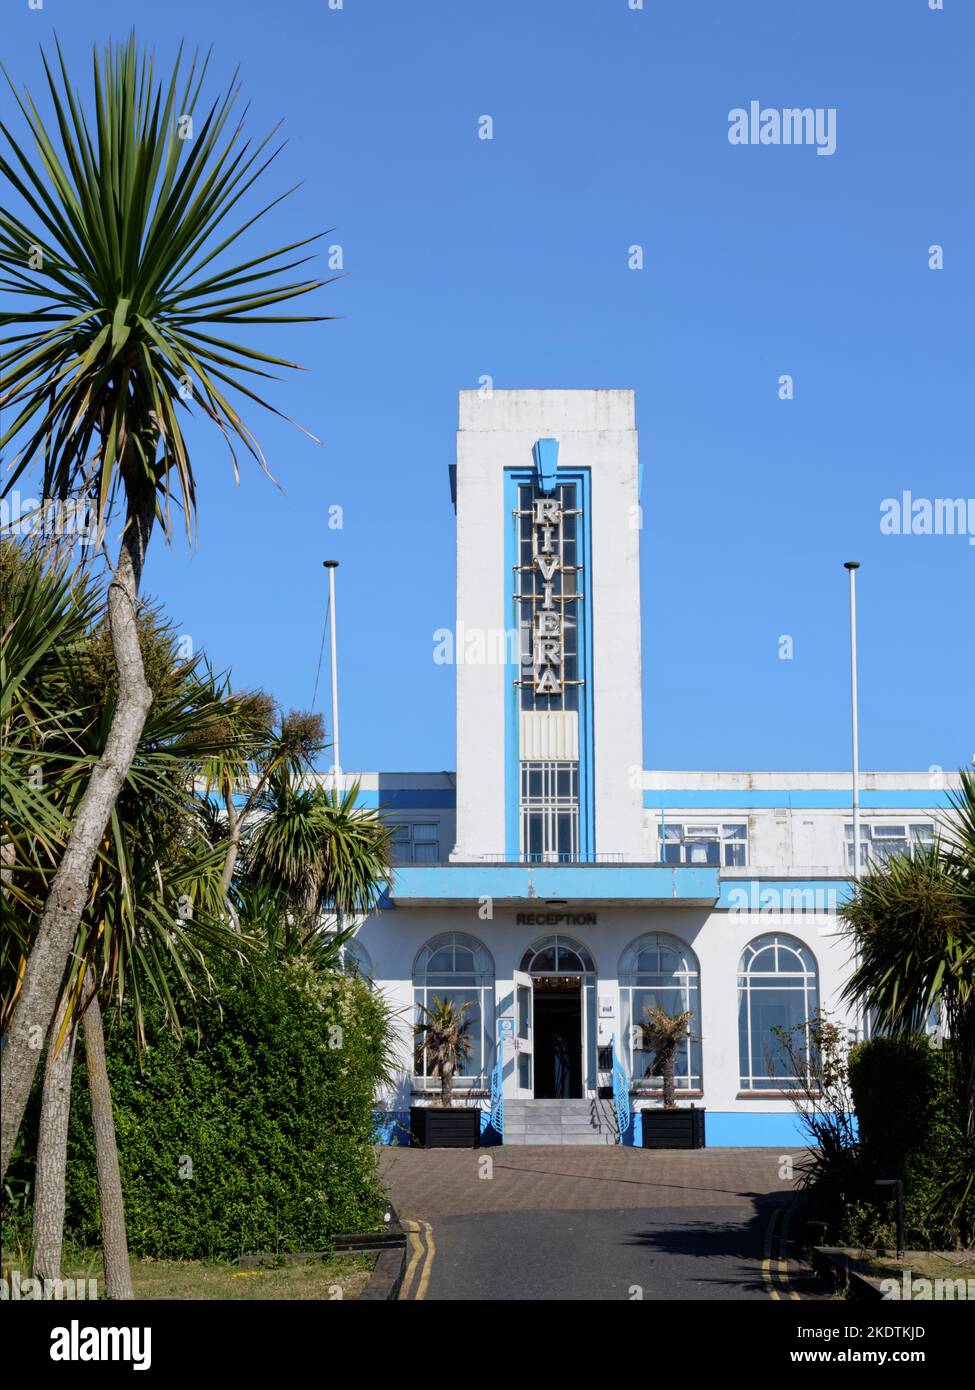 El Riviera Hotel, construido en 1937 en estilo Art Deco, ahora es un edificio catalogado de Grado II, Weymouth, Dorset, Reino Unido, julio de 2022. Foto de stock